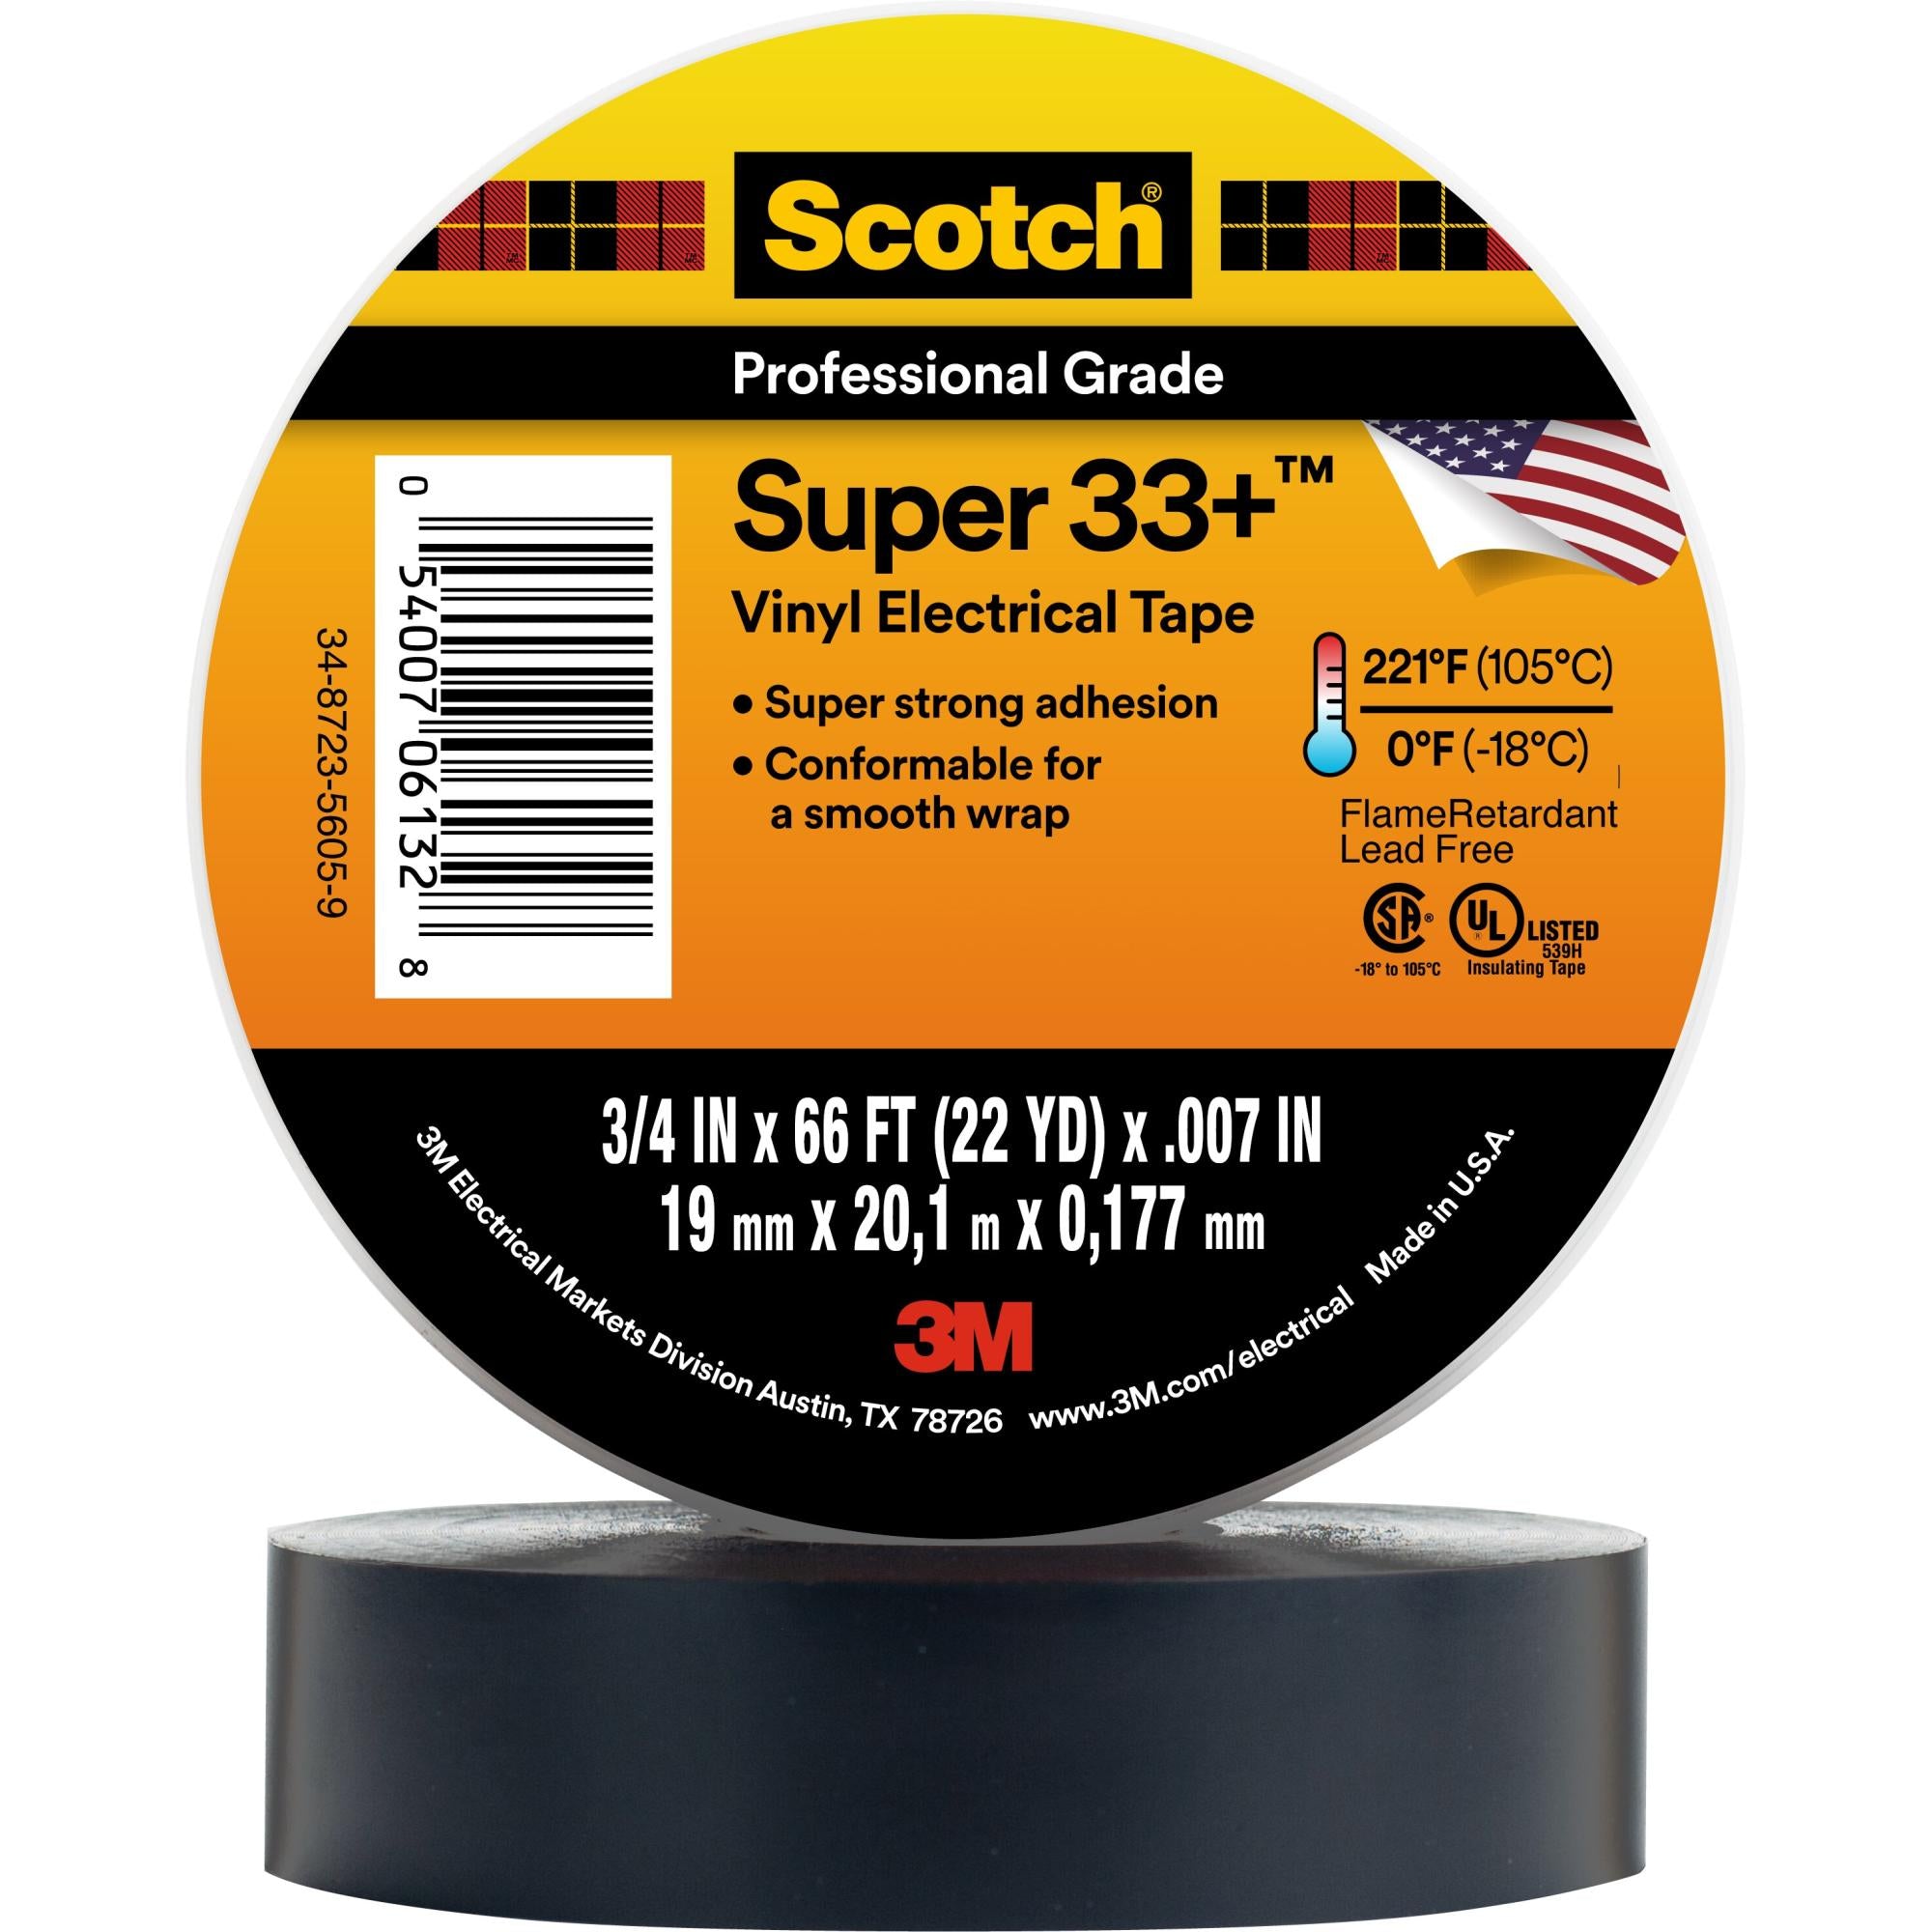 Scotch? Super 33+ Vinyl Electrical Tape, 3/4 in x 66 ft, Black